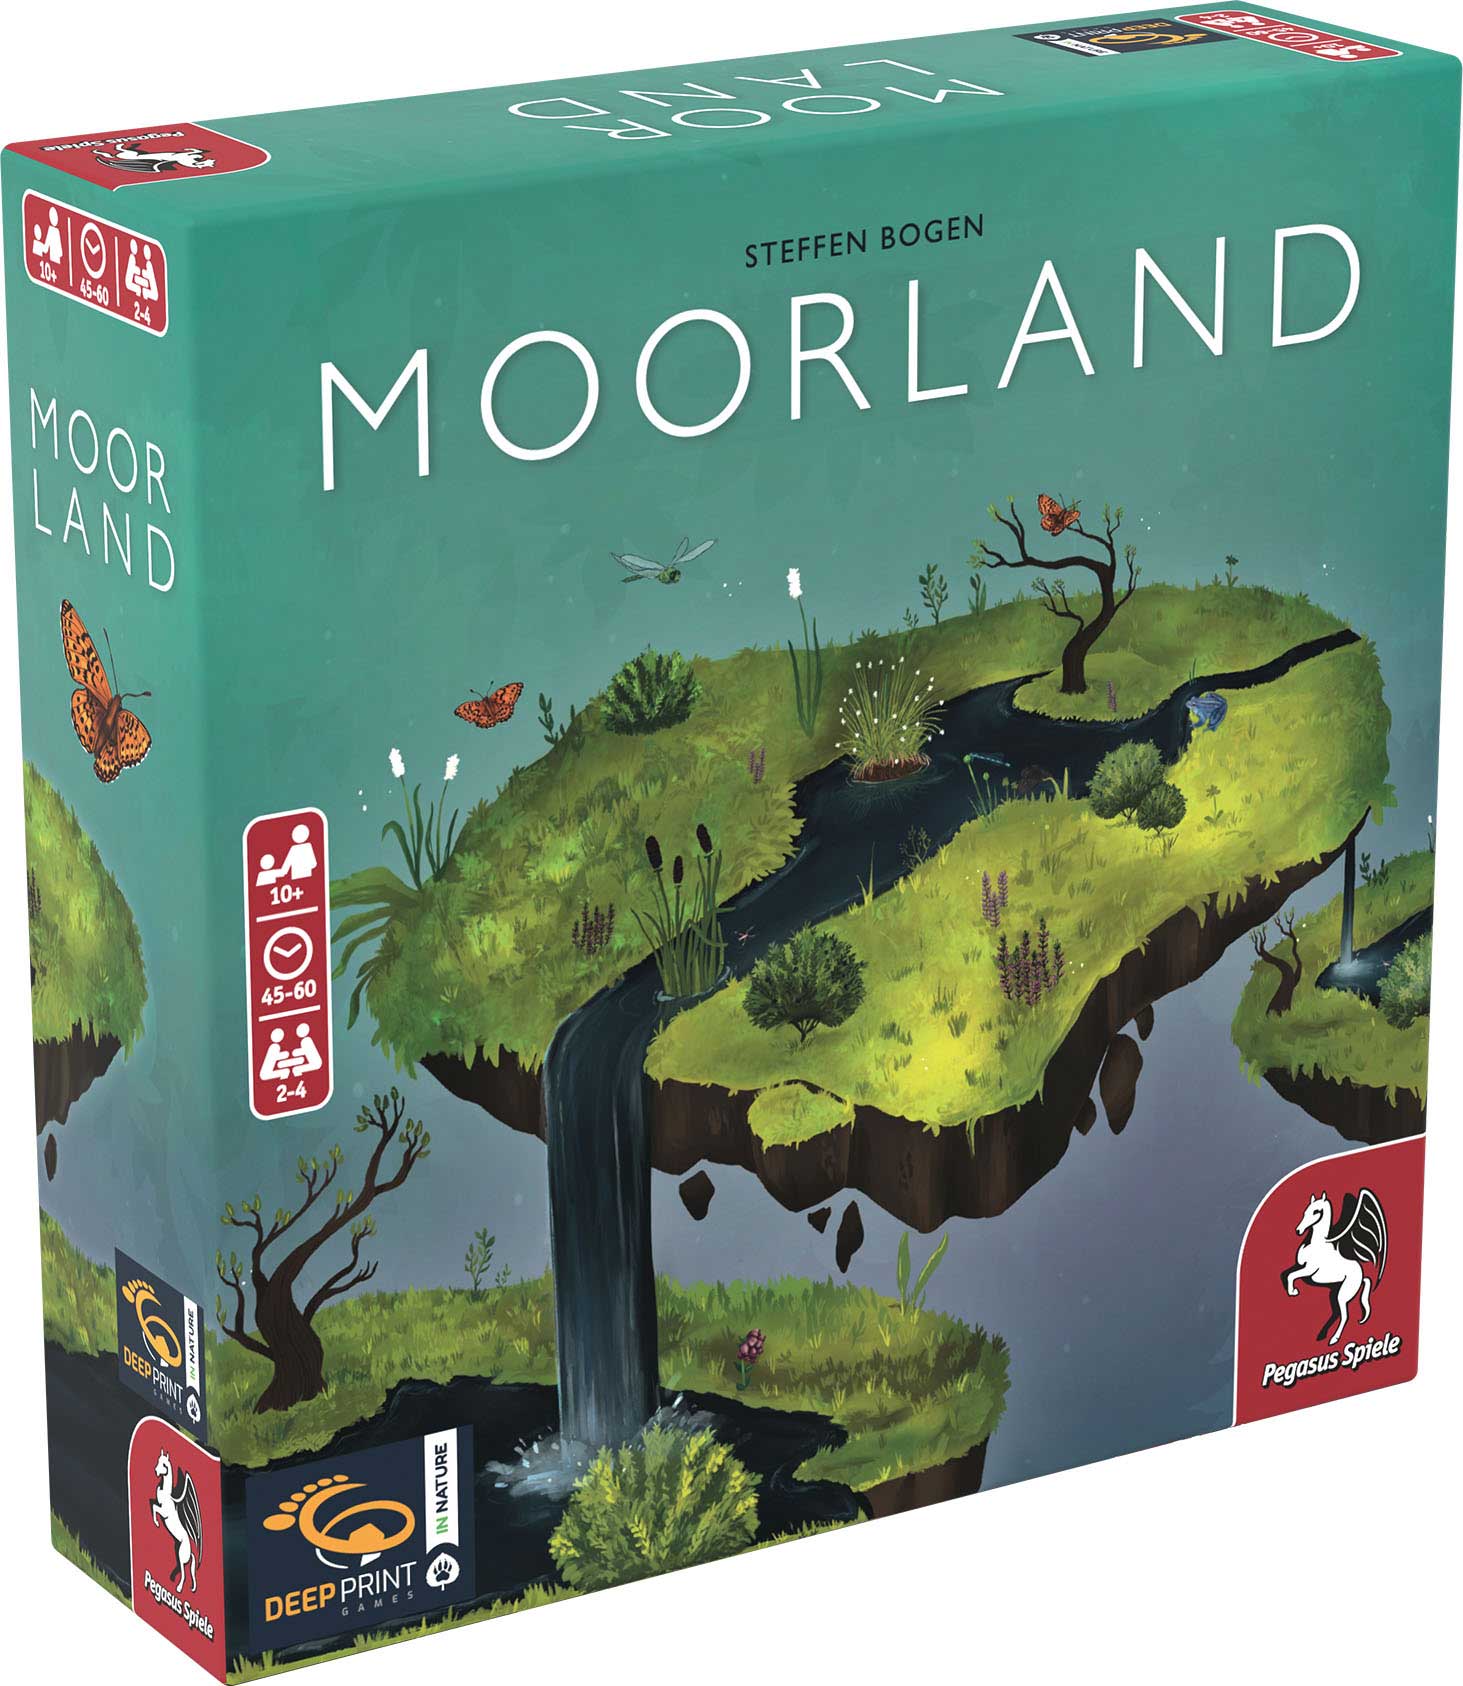 Deep Print games Moorland